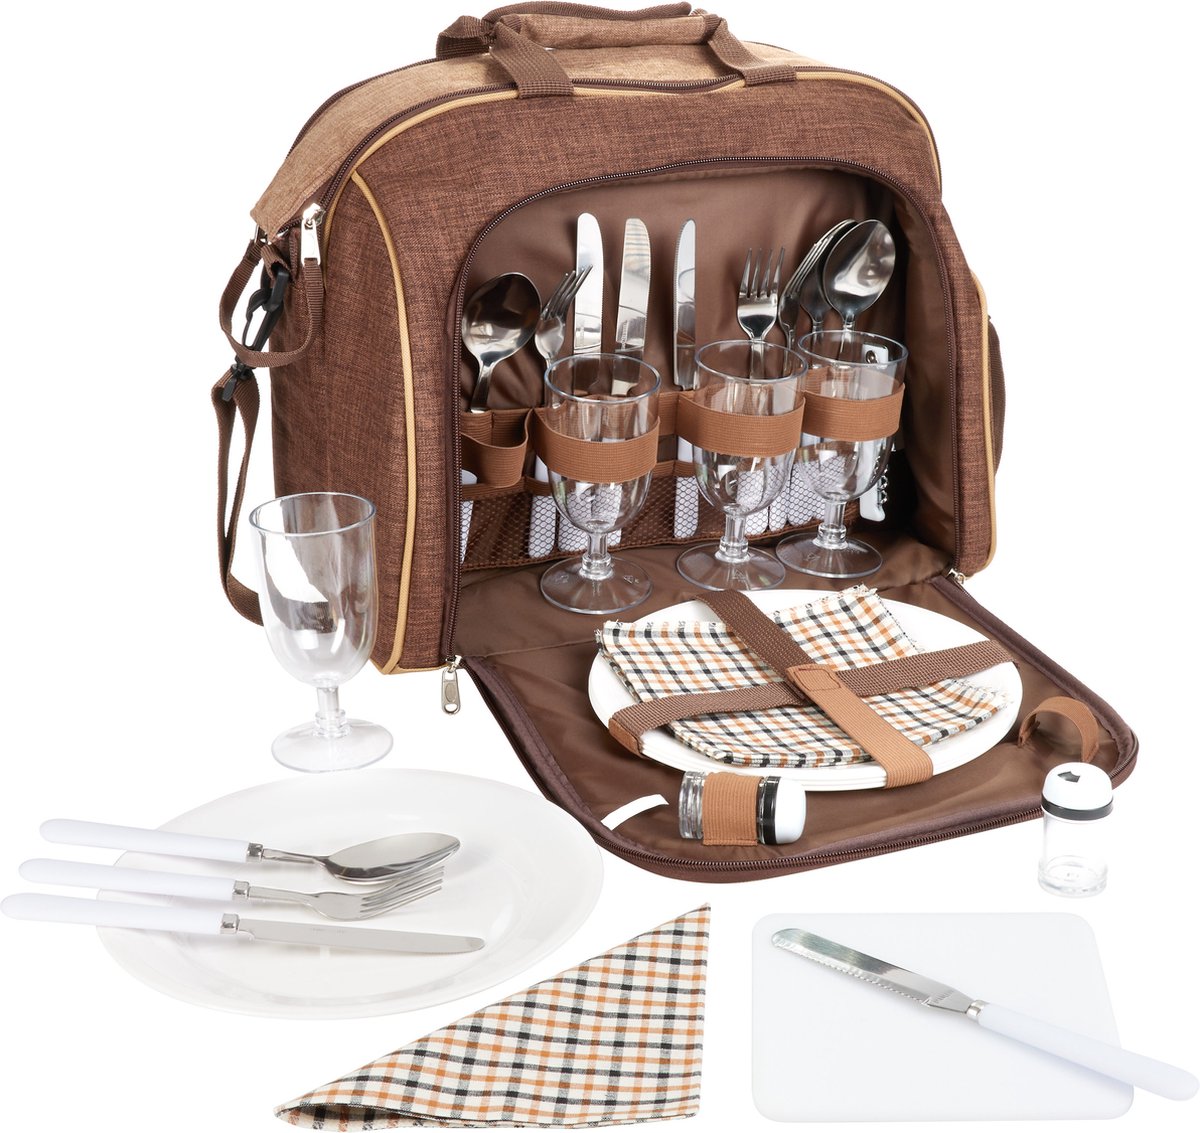 BRUBAKER | Picknicktasche | 4 Personen mit Kühlfach, tragbar als Duffeltasche oder Schultertasche | Braun | 38 × 30 x 21,5 cm | 30 Teile